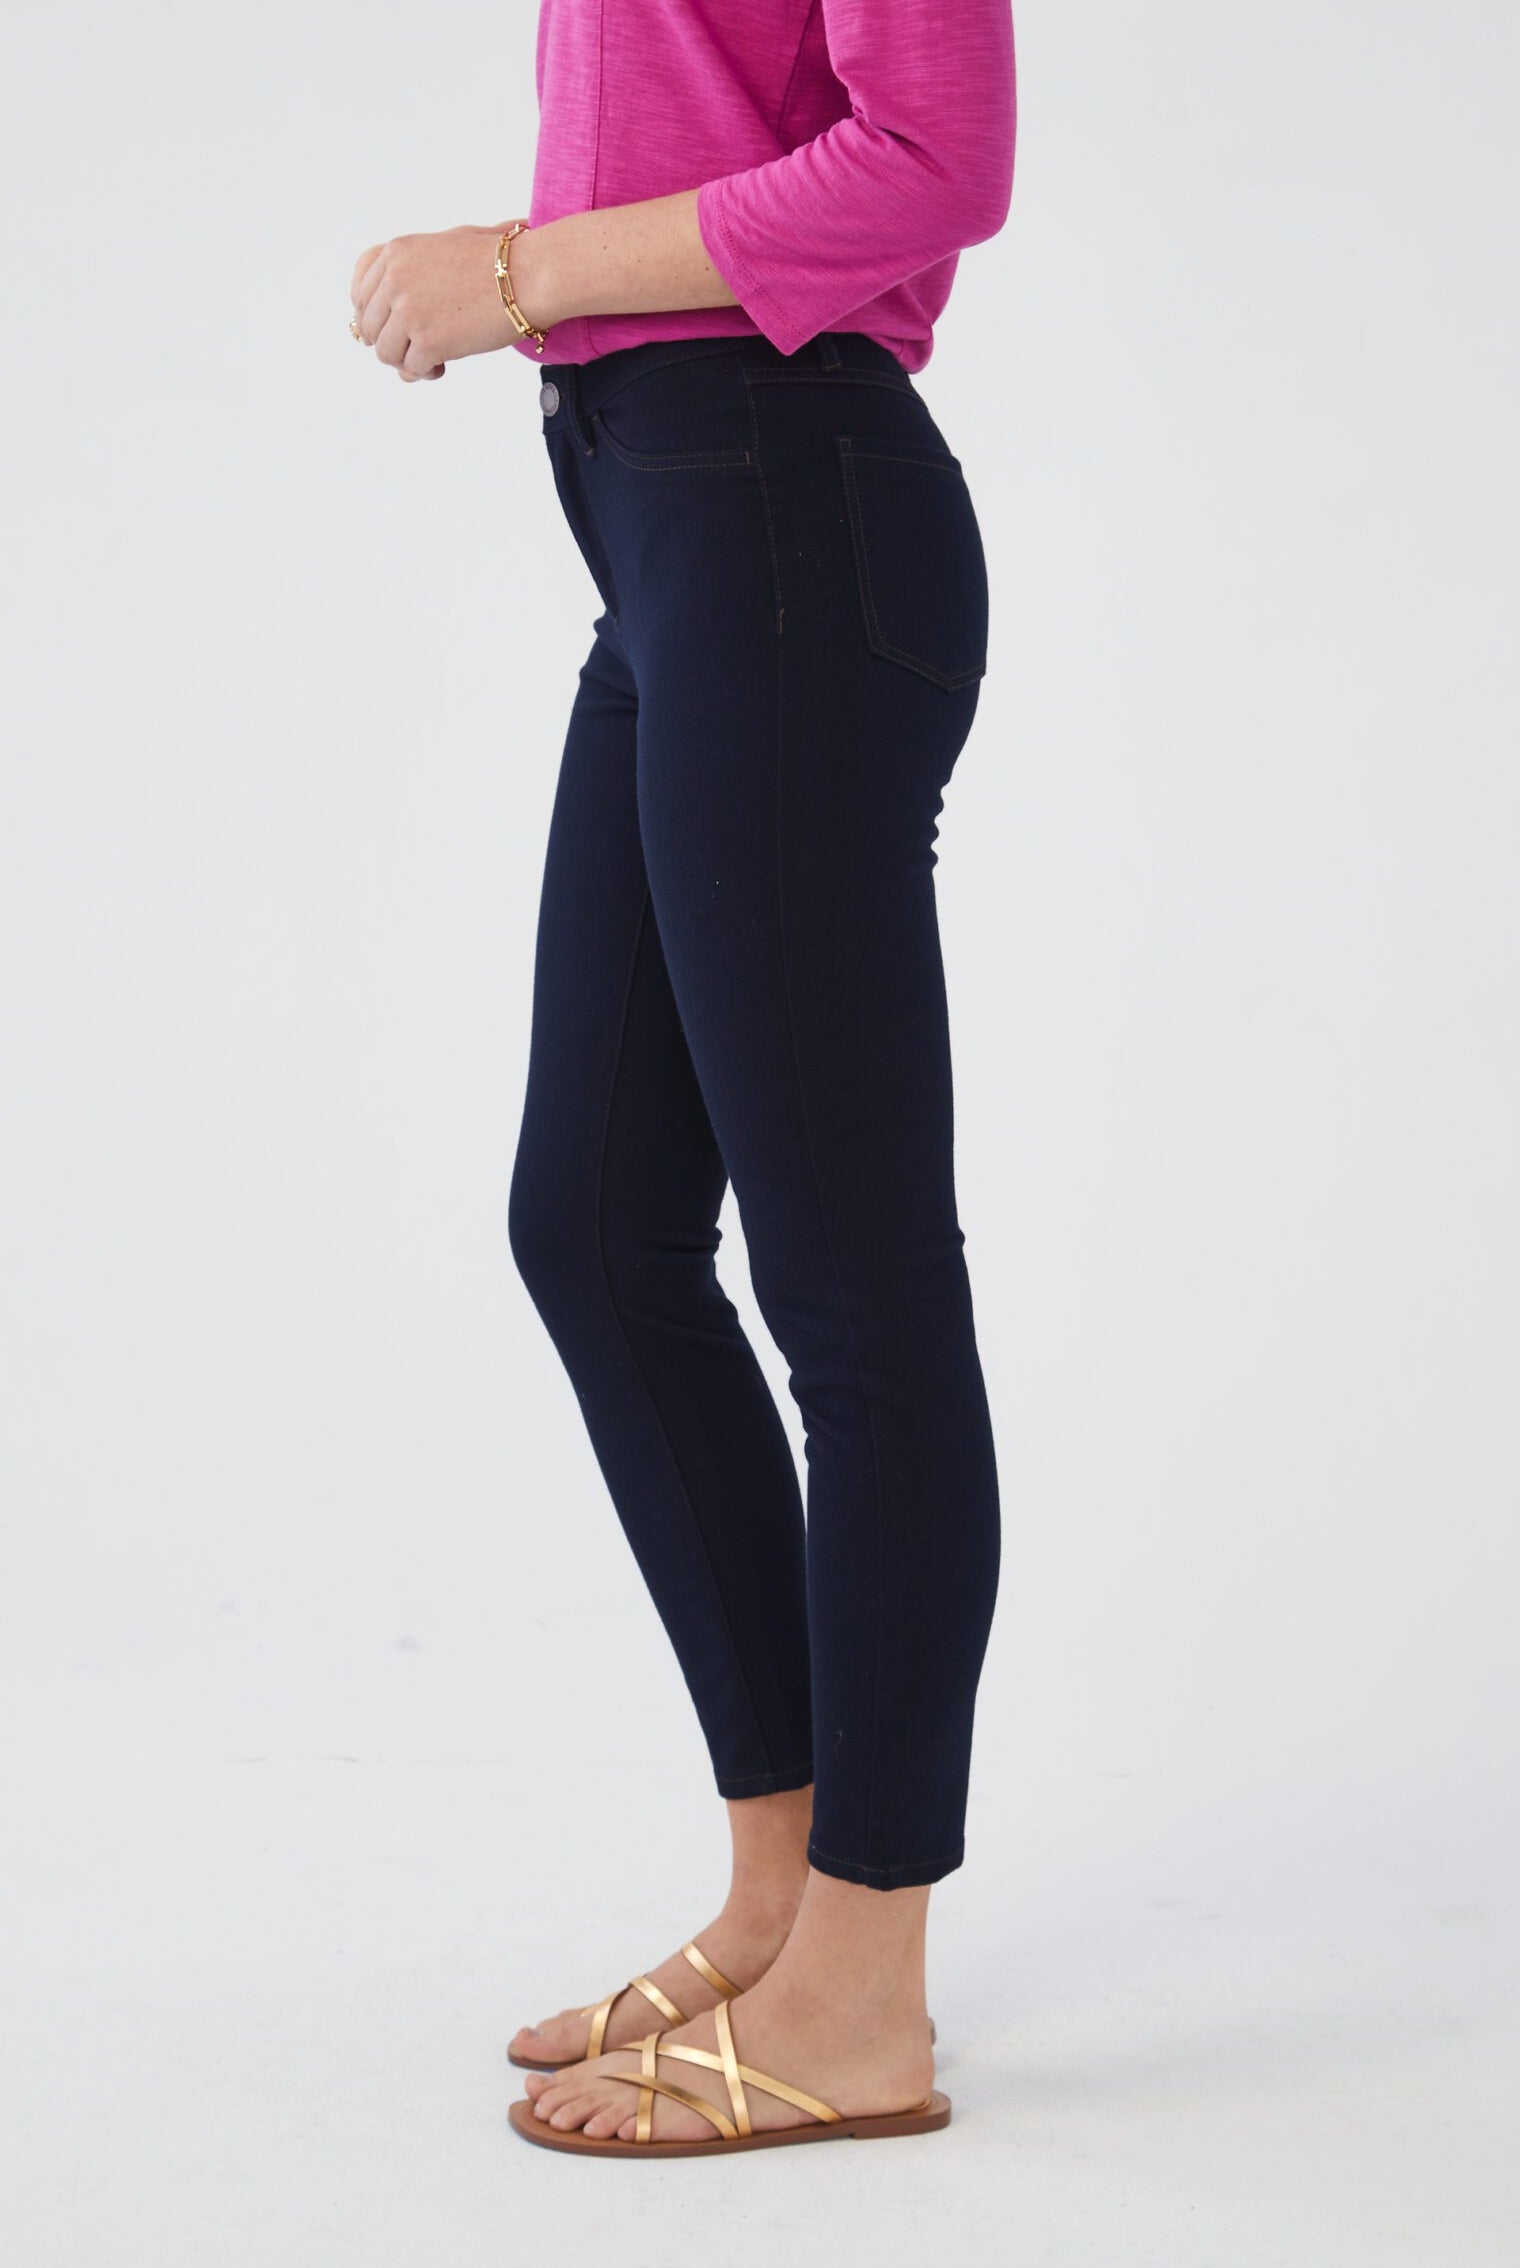 Indigo LOVE Premium Denim Olivia Slim Leg Jeans – GALLERIA FASHIONS